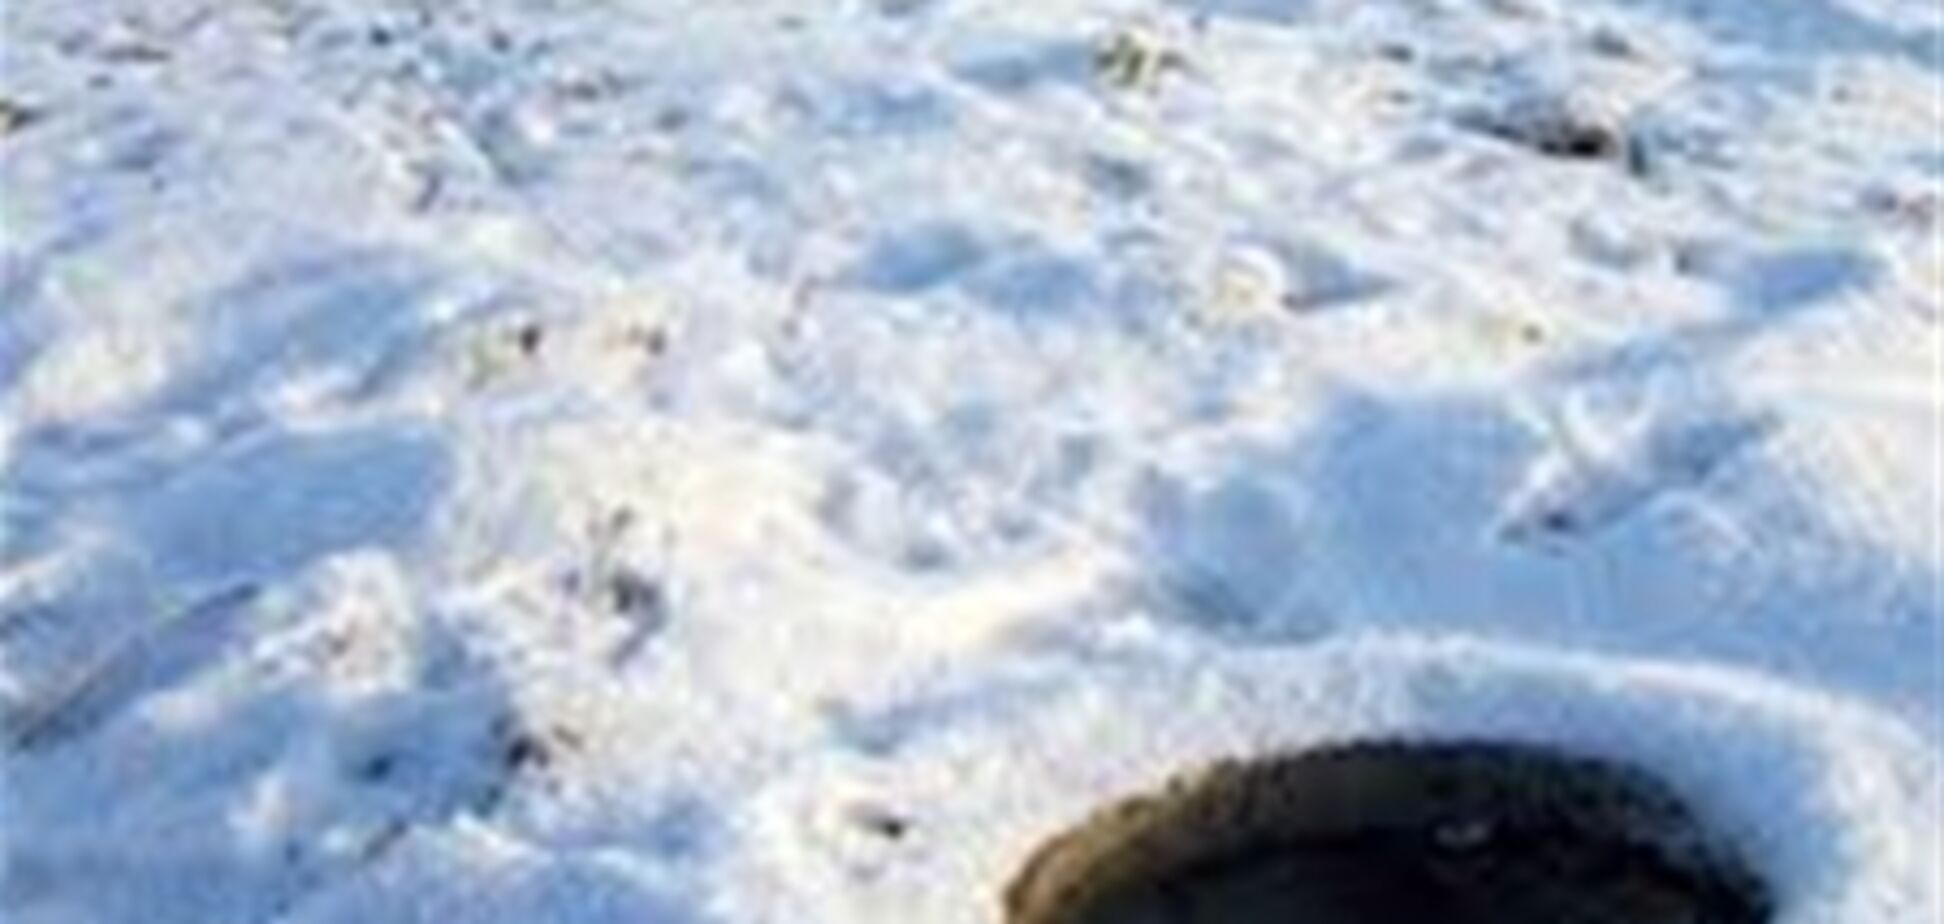 В Тернополе ребенок провалился в скрытый под снегом люк